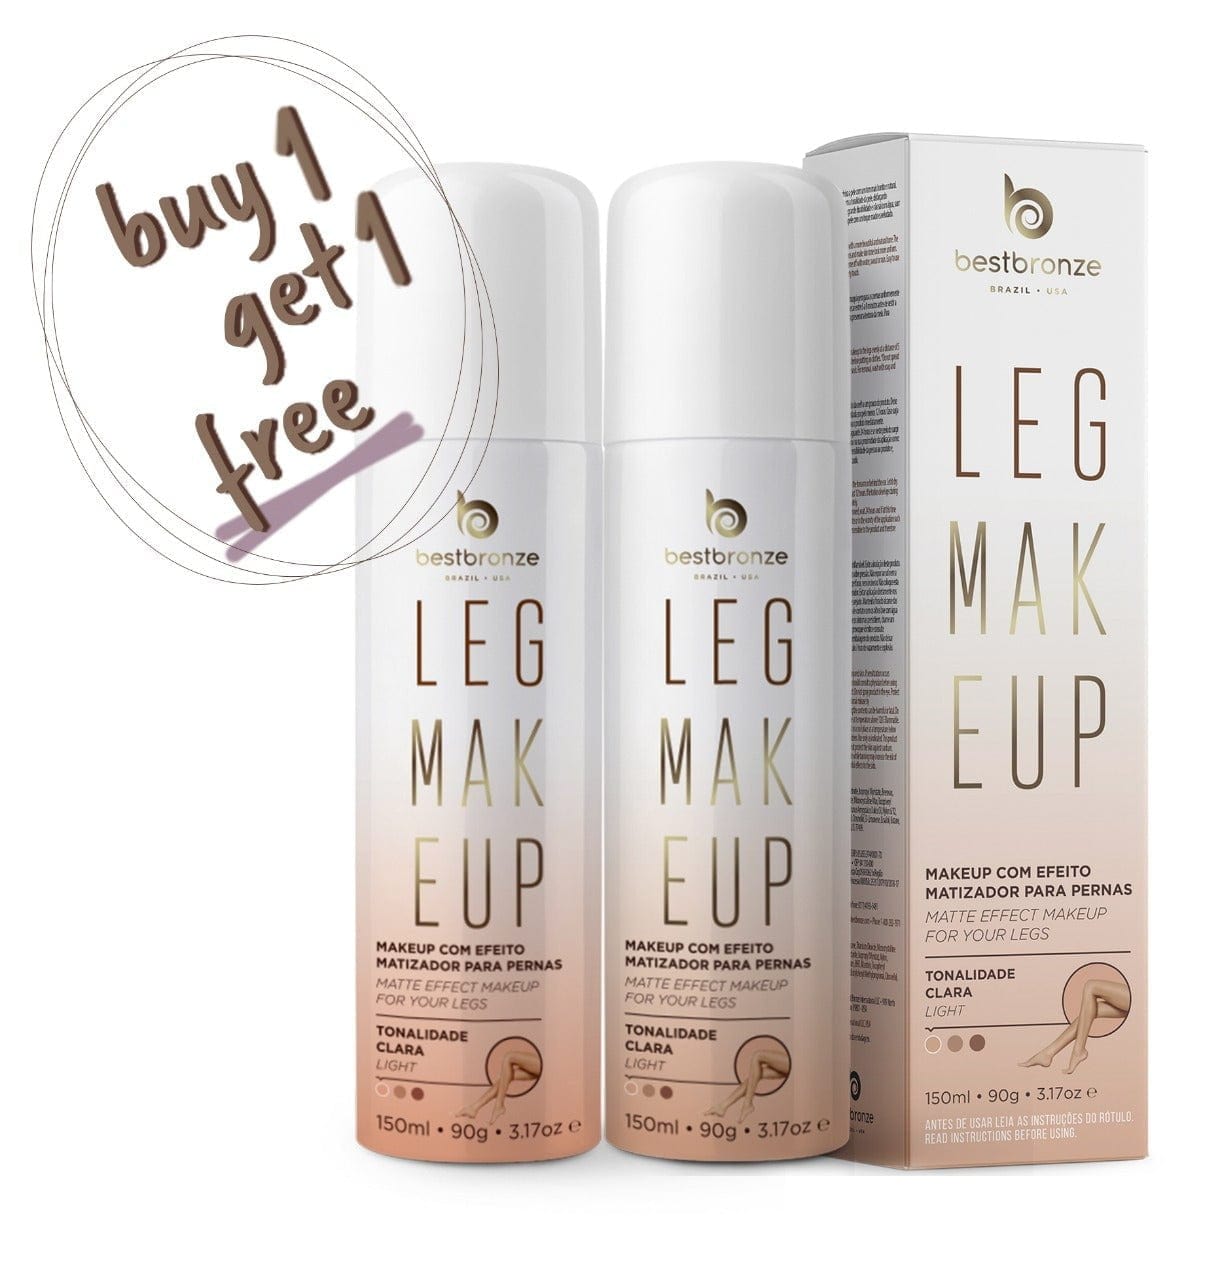 Best Bronze LIGHT Buy 1 Get 1 Leg Makeup Flawless Legs 150ml